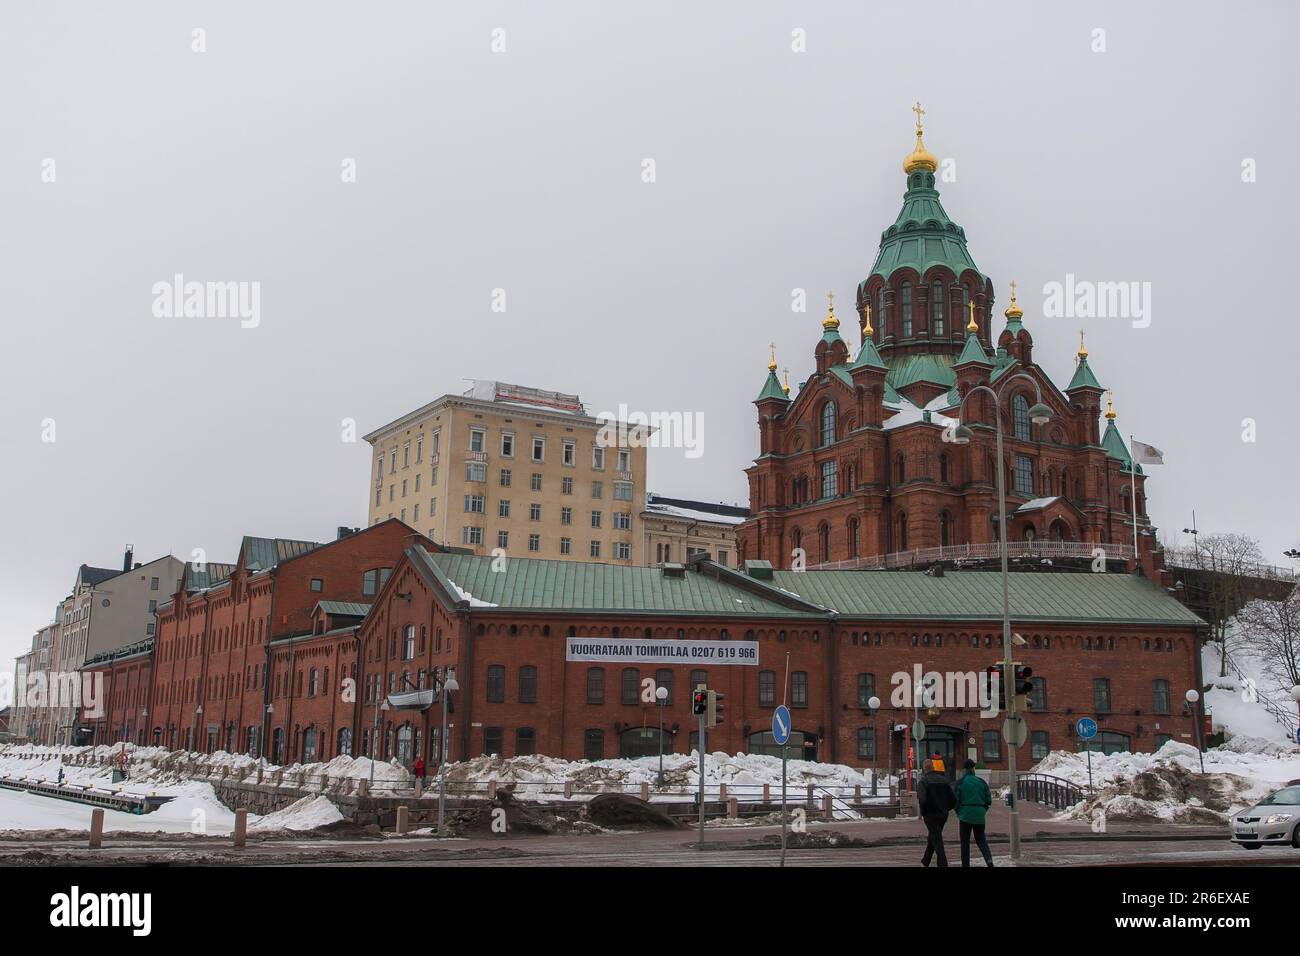 Cattedrale di Uspenski (chiesa vecchia), Helsinki, Finlandia in inverno. Una cattedrale greco-ortodossa o ortodossa orientale costruita 200 anni fa Foto Stock